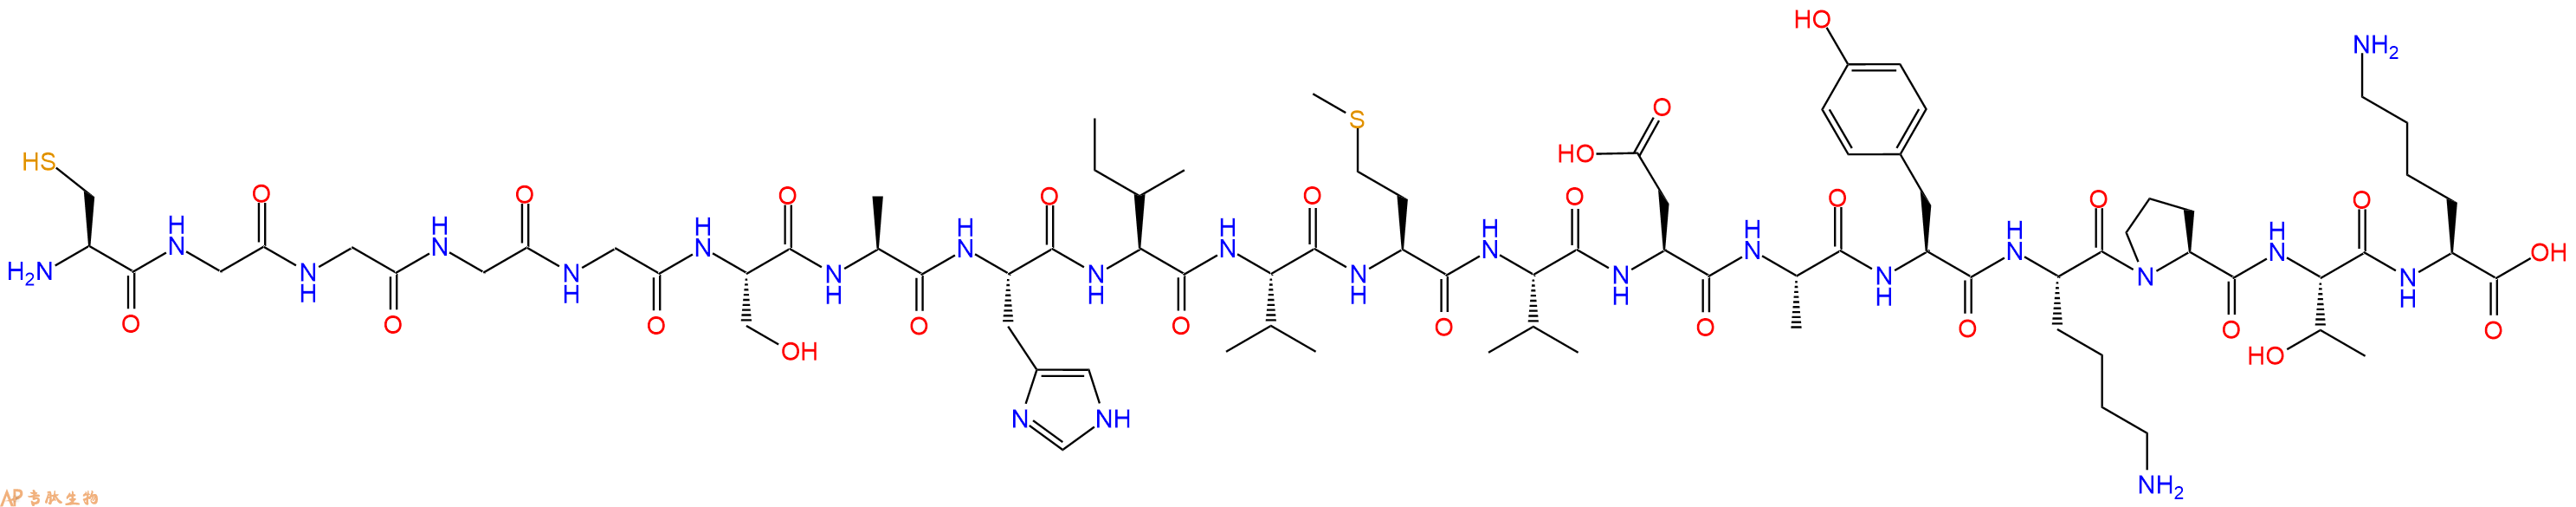 专肽生物产品H2N-Cys-Gly-Gly-Gly-Gly-Ser-Ala-His-Ile-Val-Met-Va